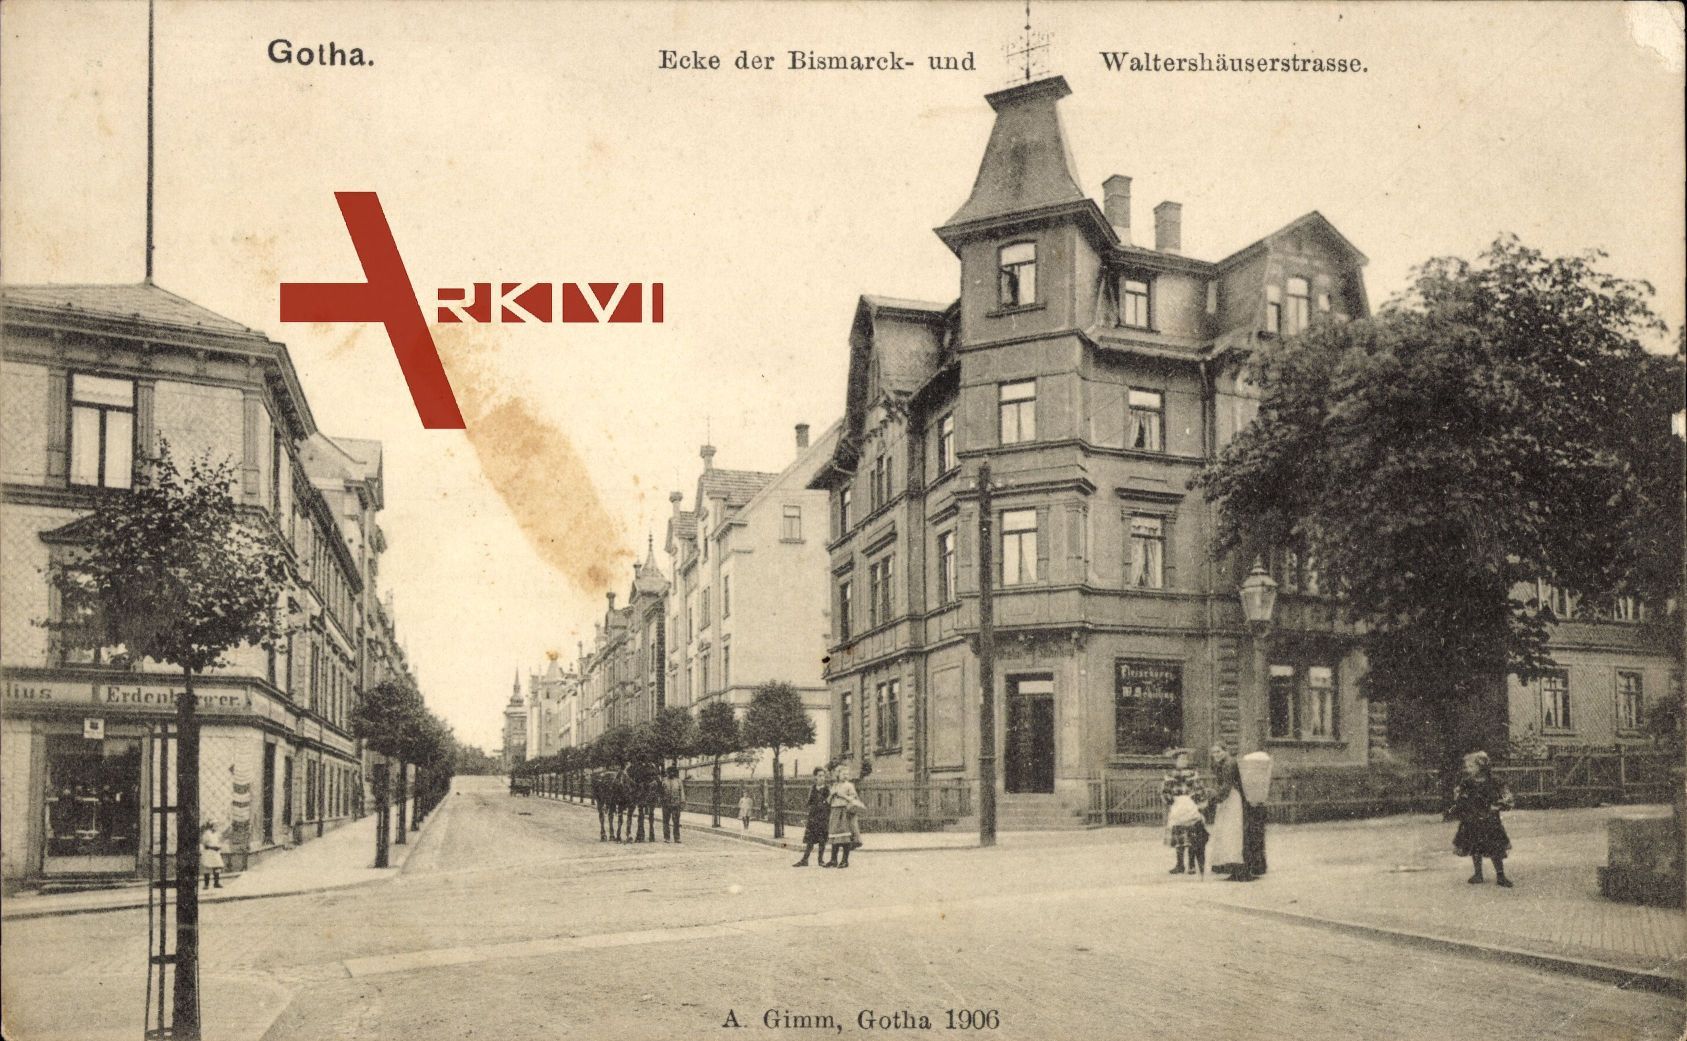 Gotha, Partie an der Ecke der Bismarck und Waltershäuserstraße